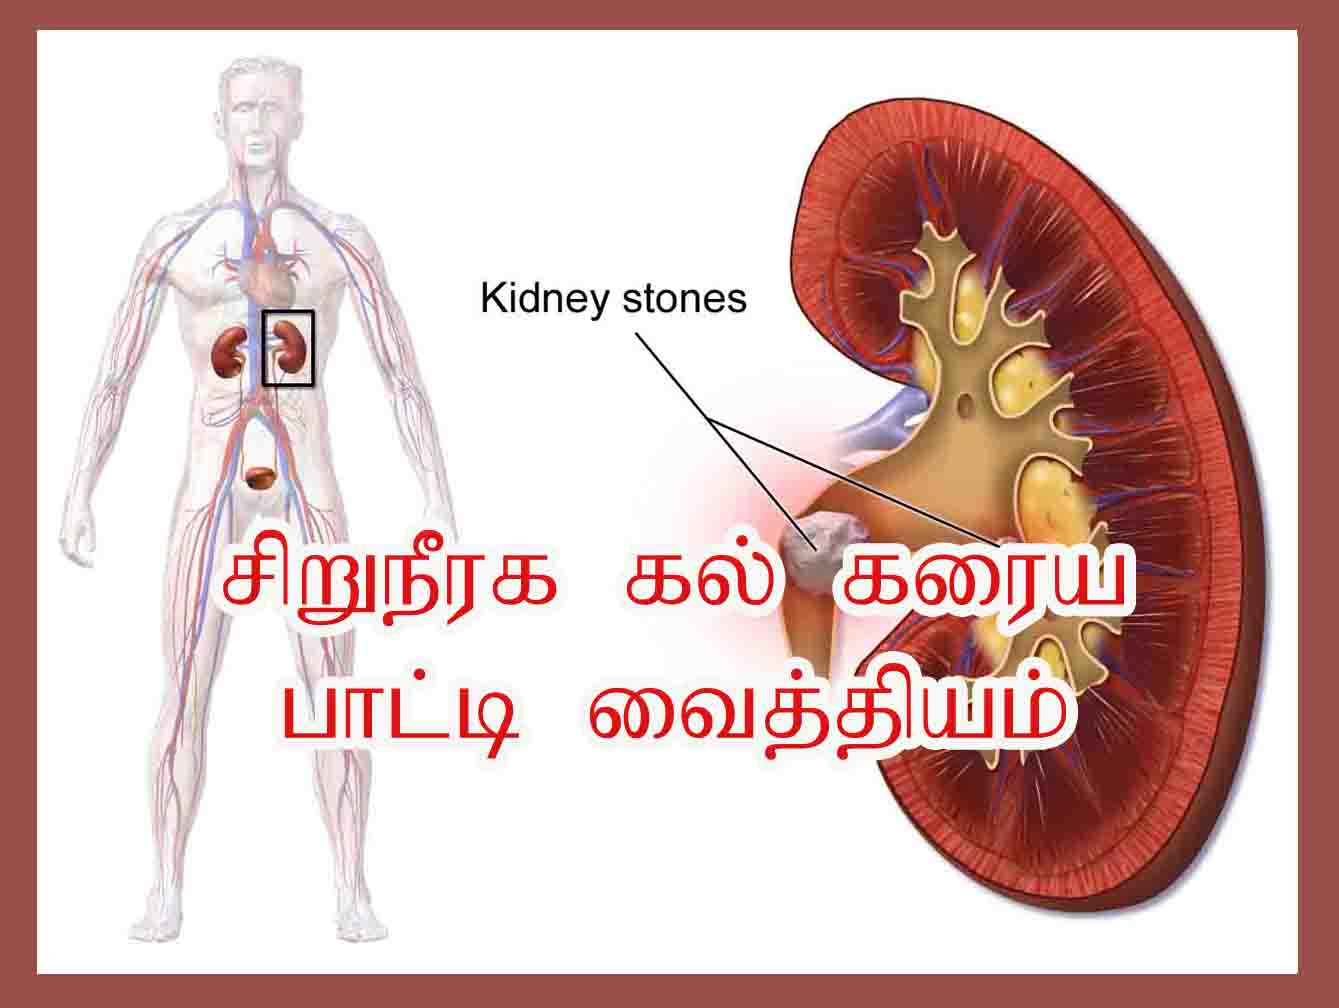 சிறுநீரக கல் கரைய பாட்டி வைத்தியம் | Kidney Stone Treatment in Tamil